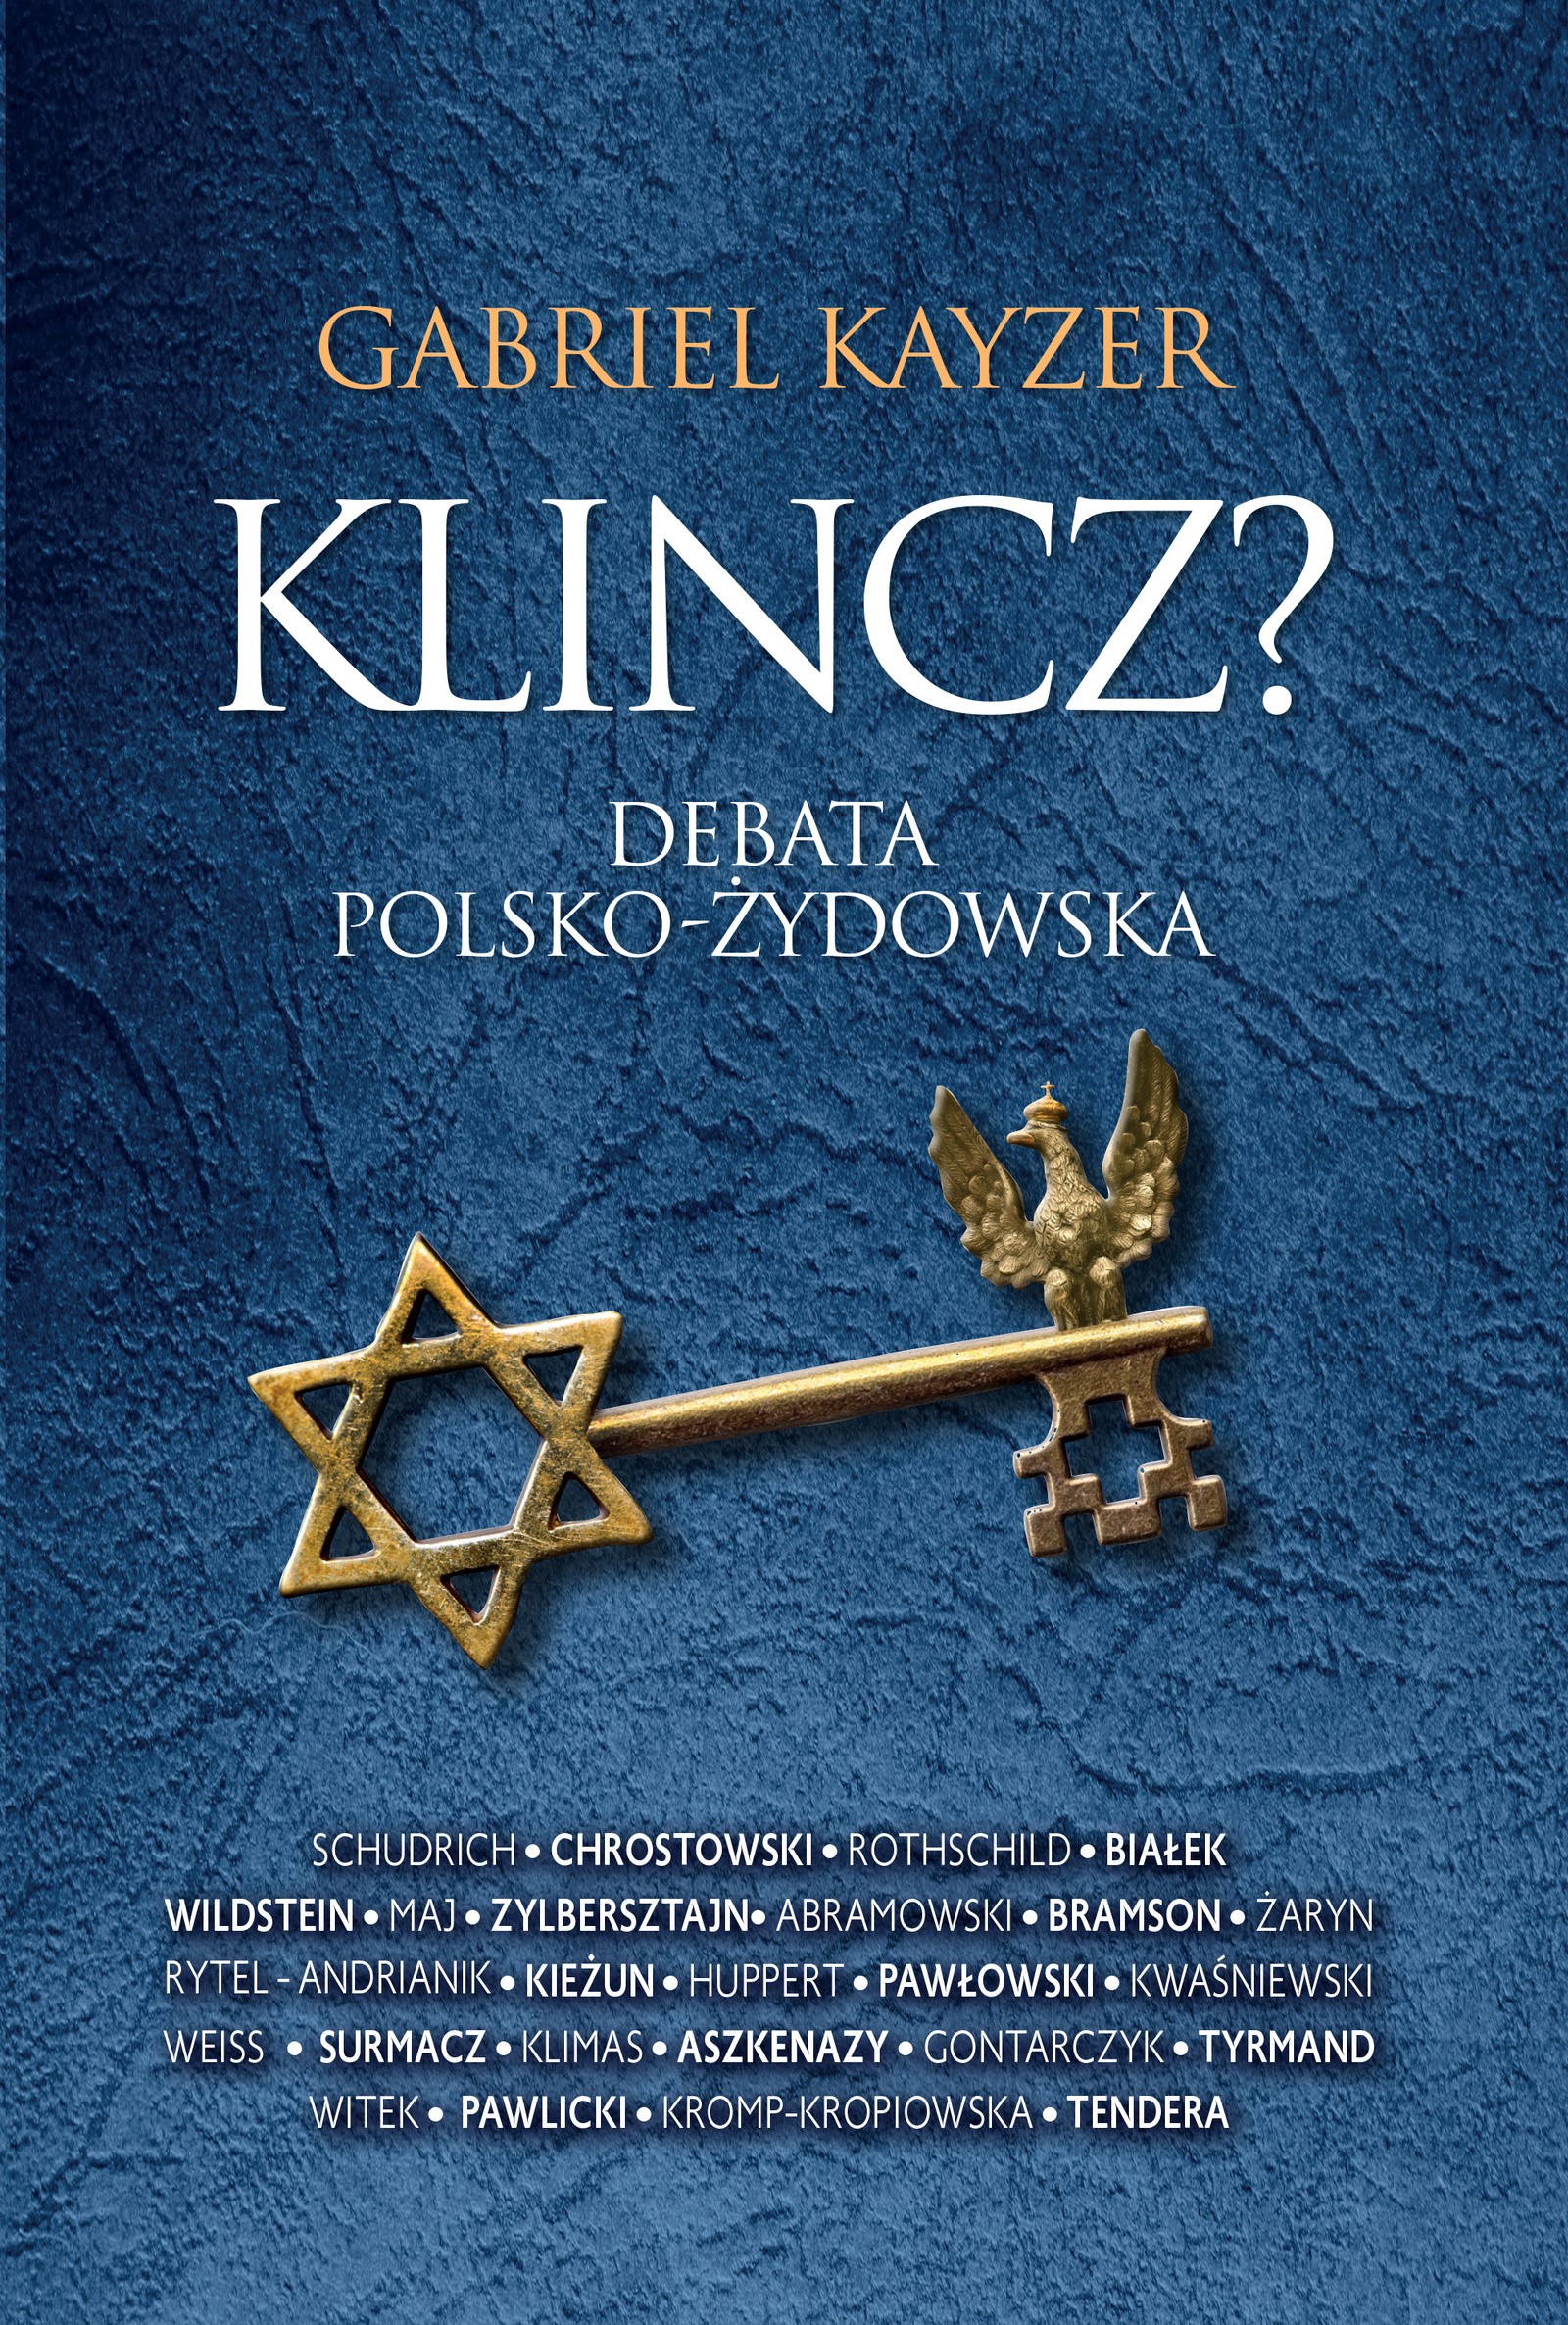 Okładka:Klincz? Debata polsko - żydowska 